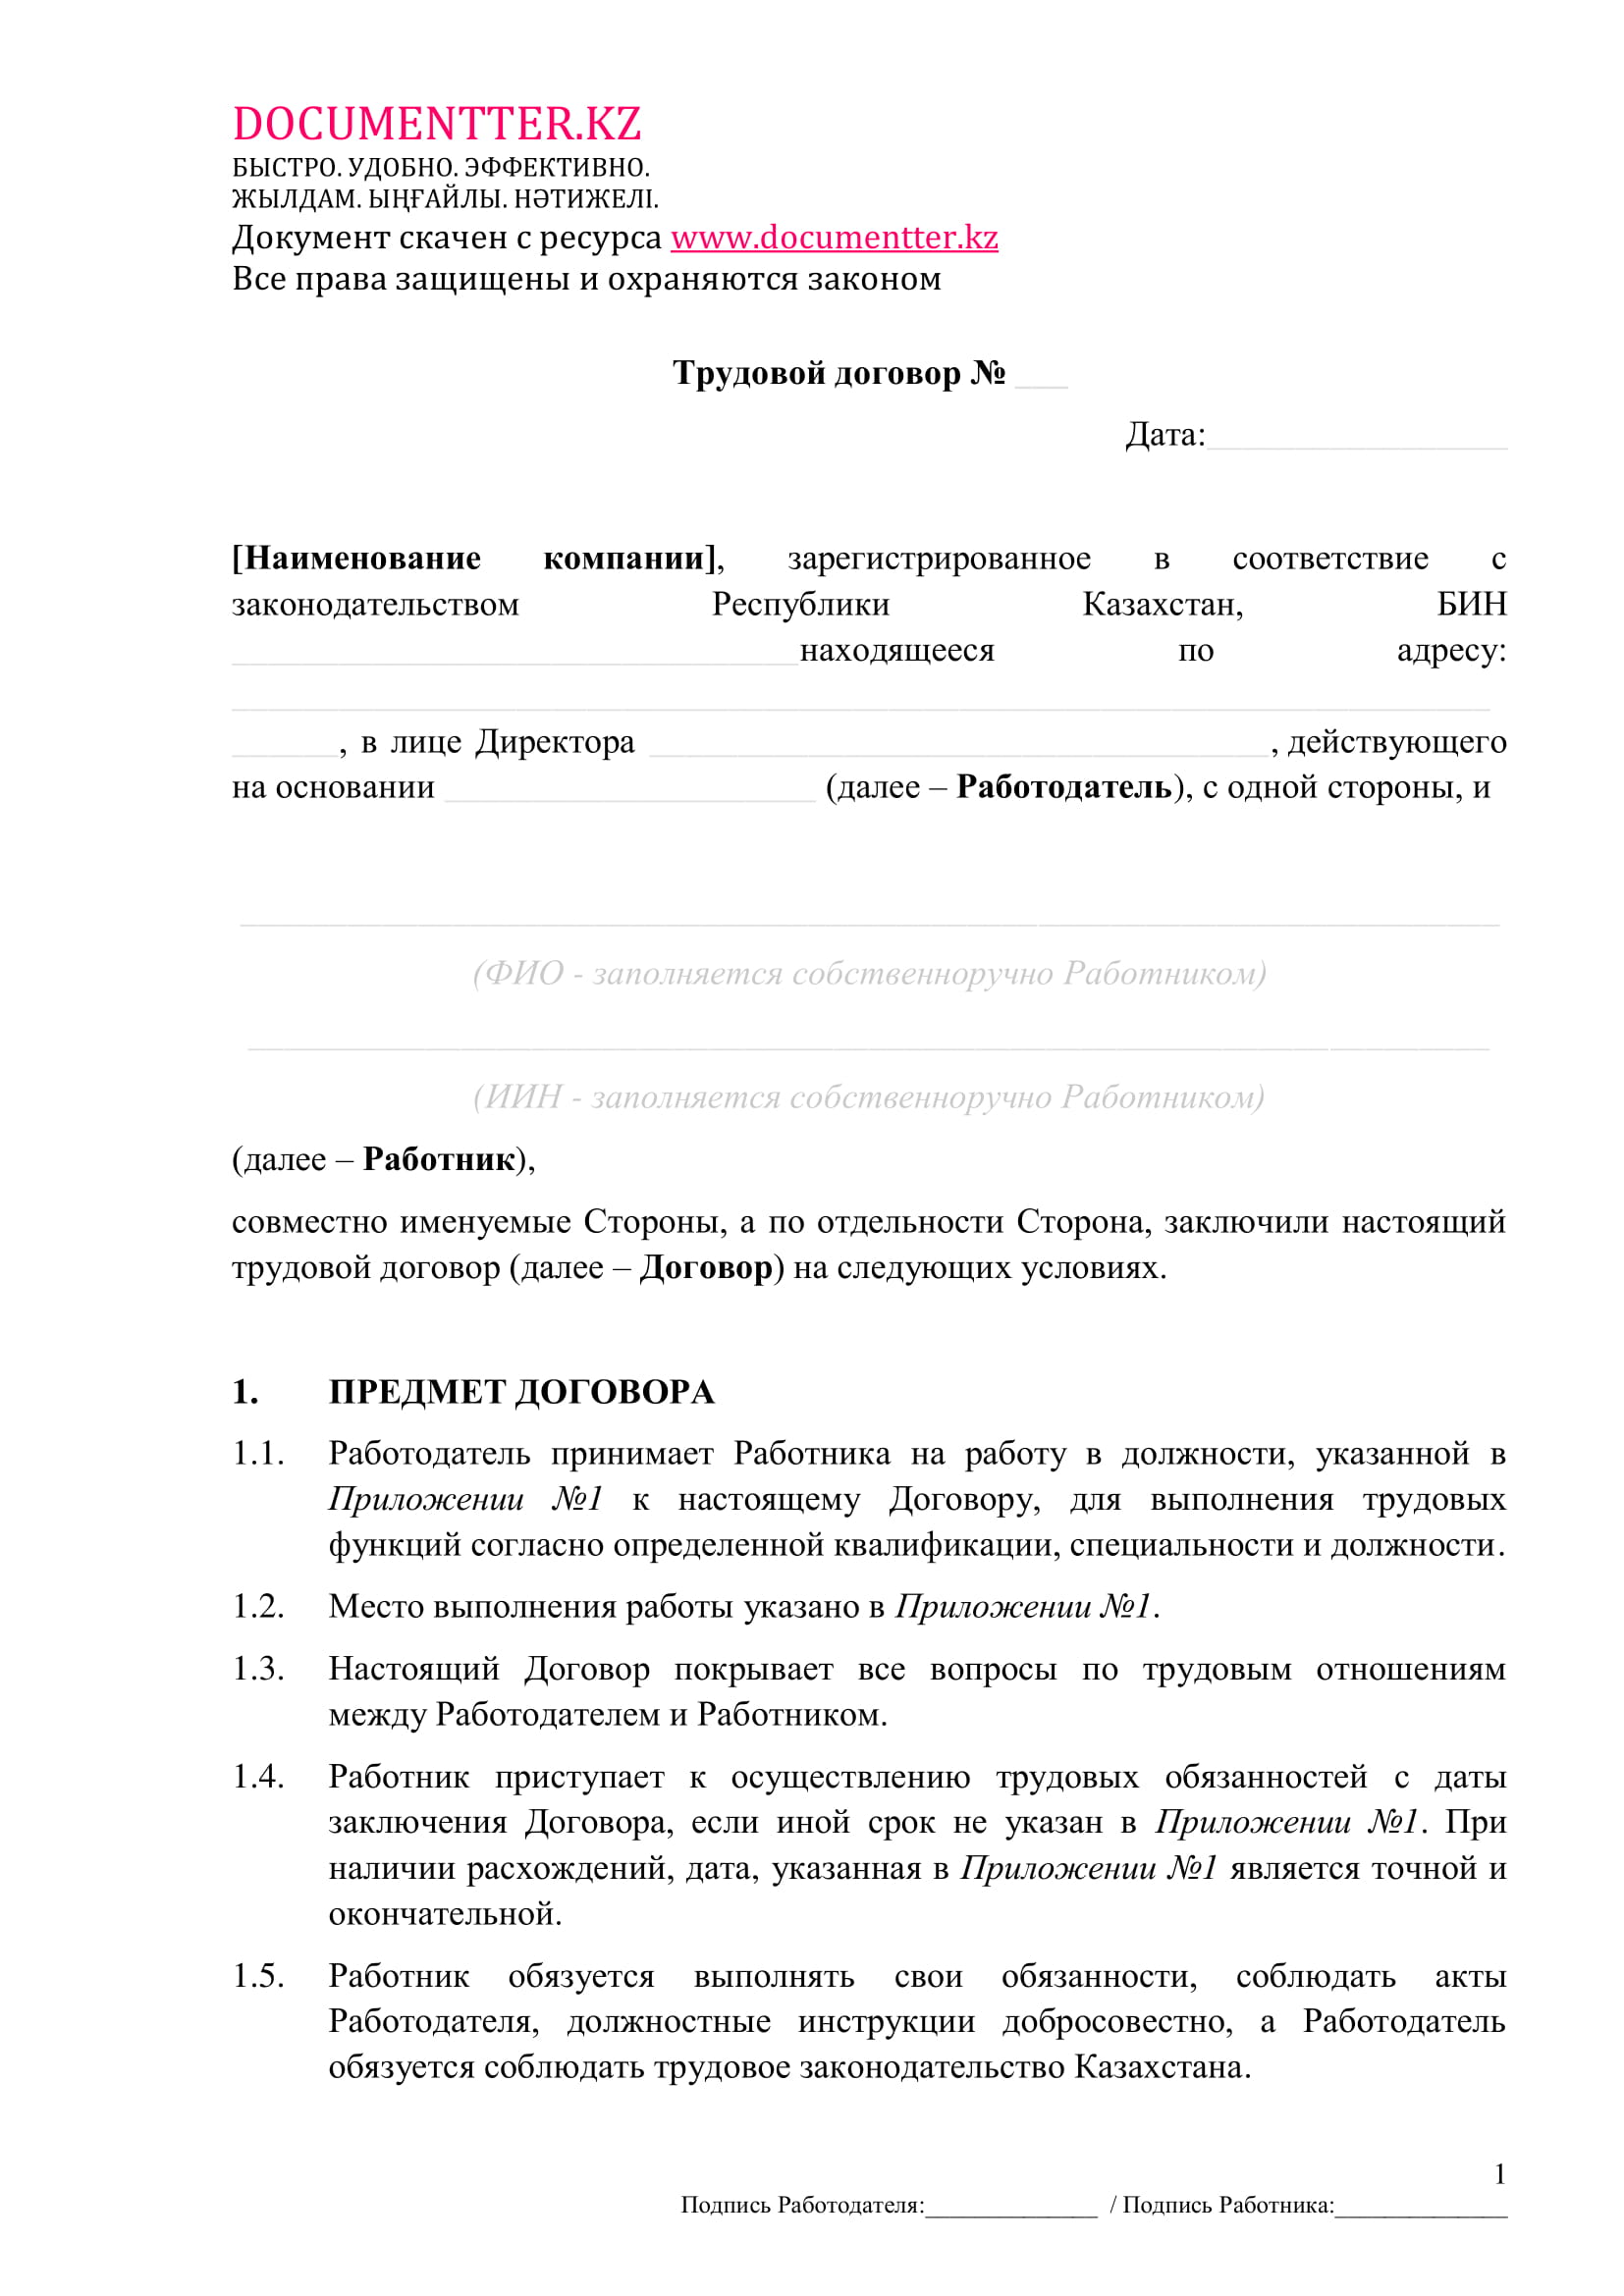 Трудовой договор 4 | documentter.kz в Казахстане 